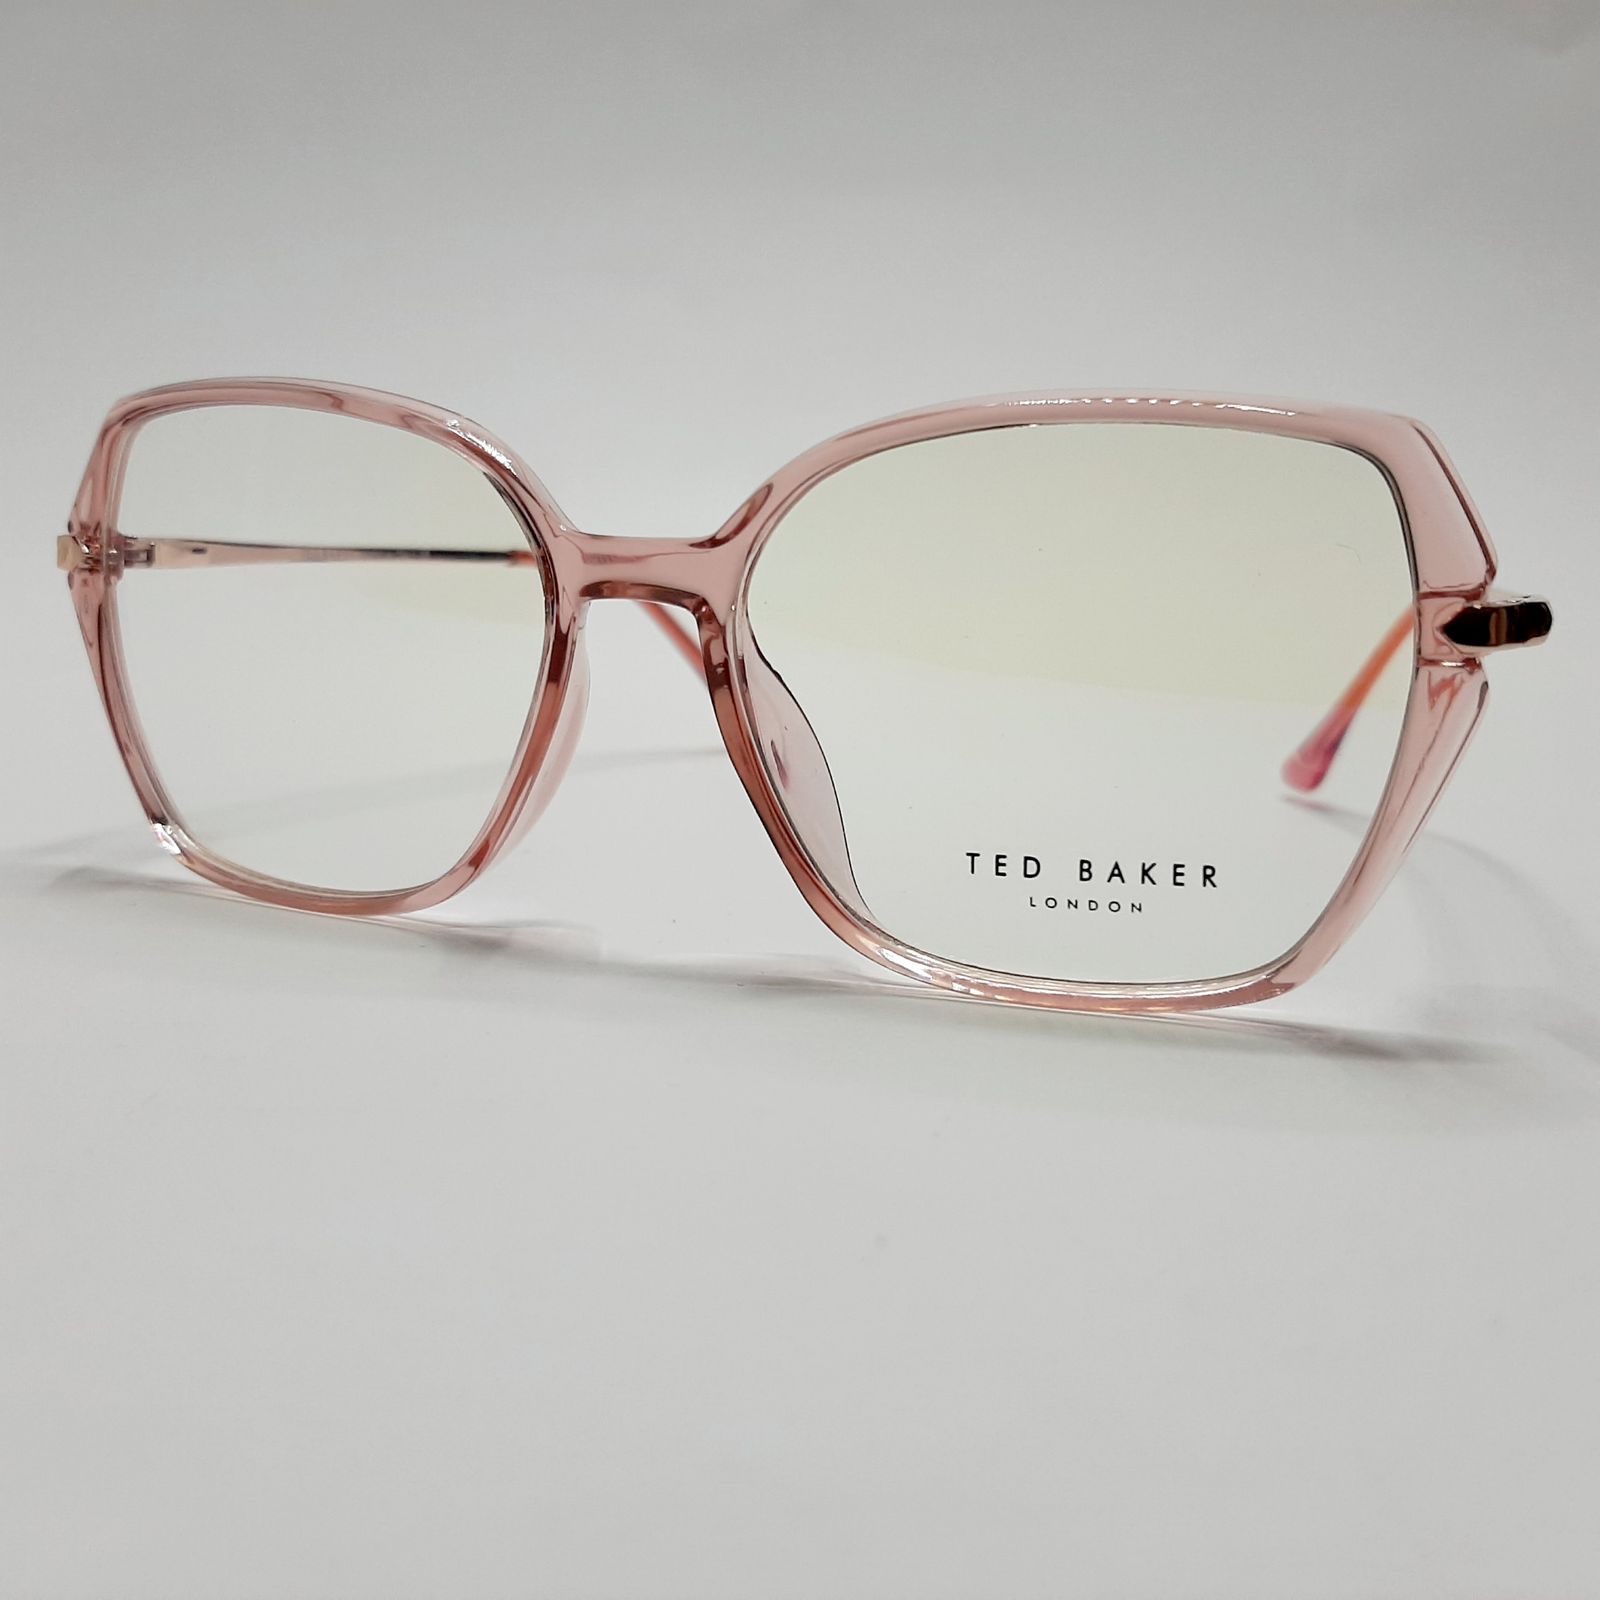 فریم عینک طبی زنانه تد بیکر مدل 95642c6 -  - 3